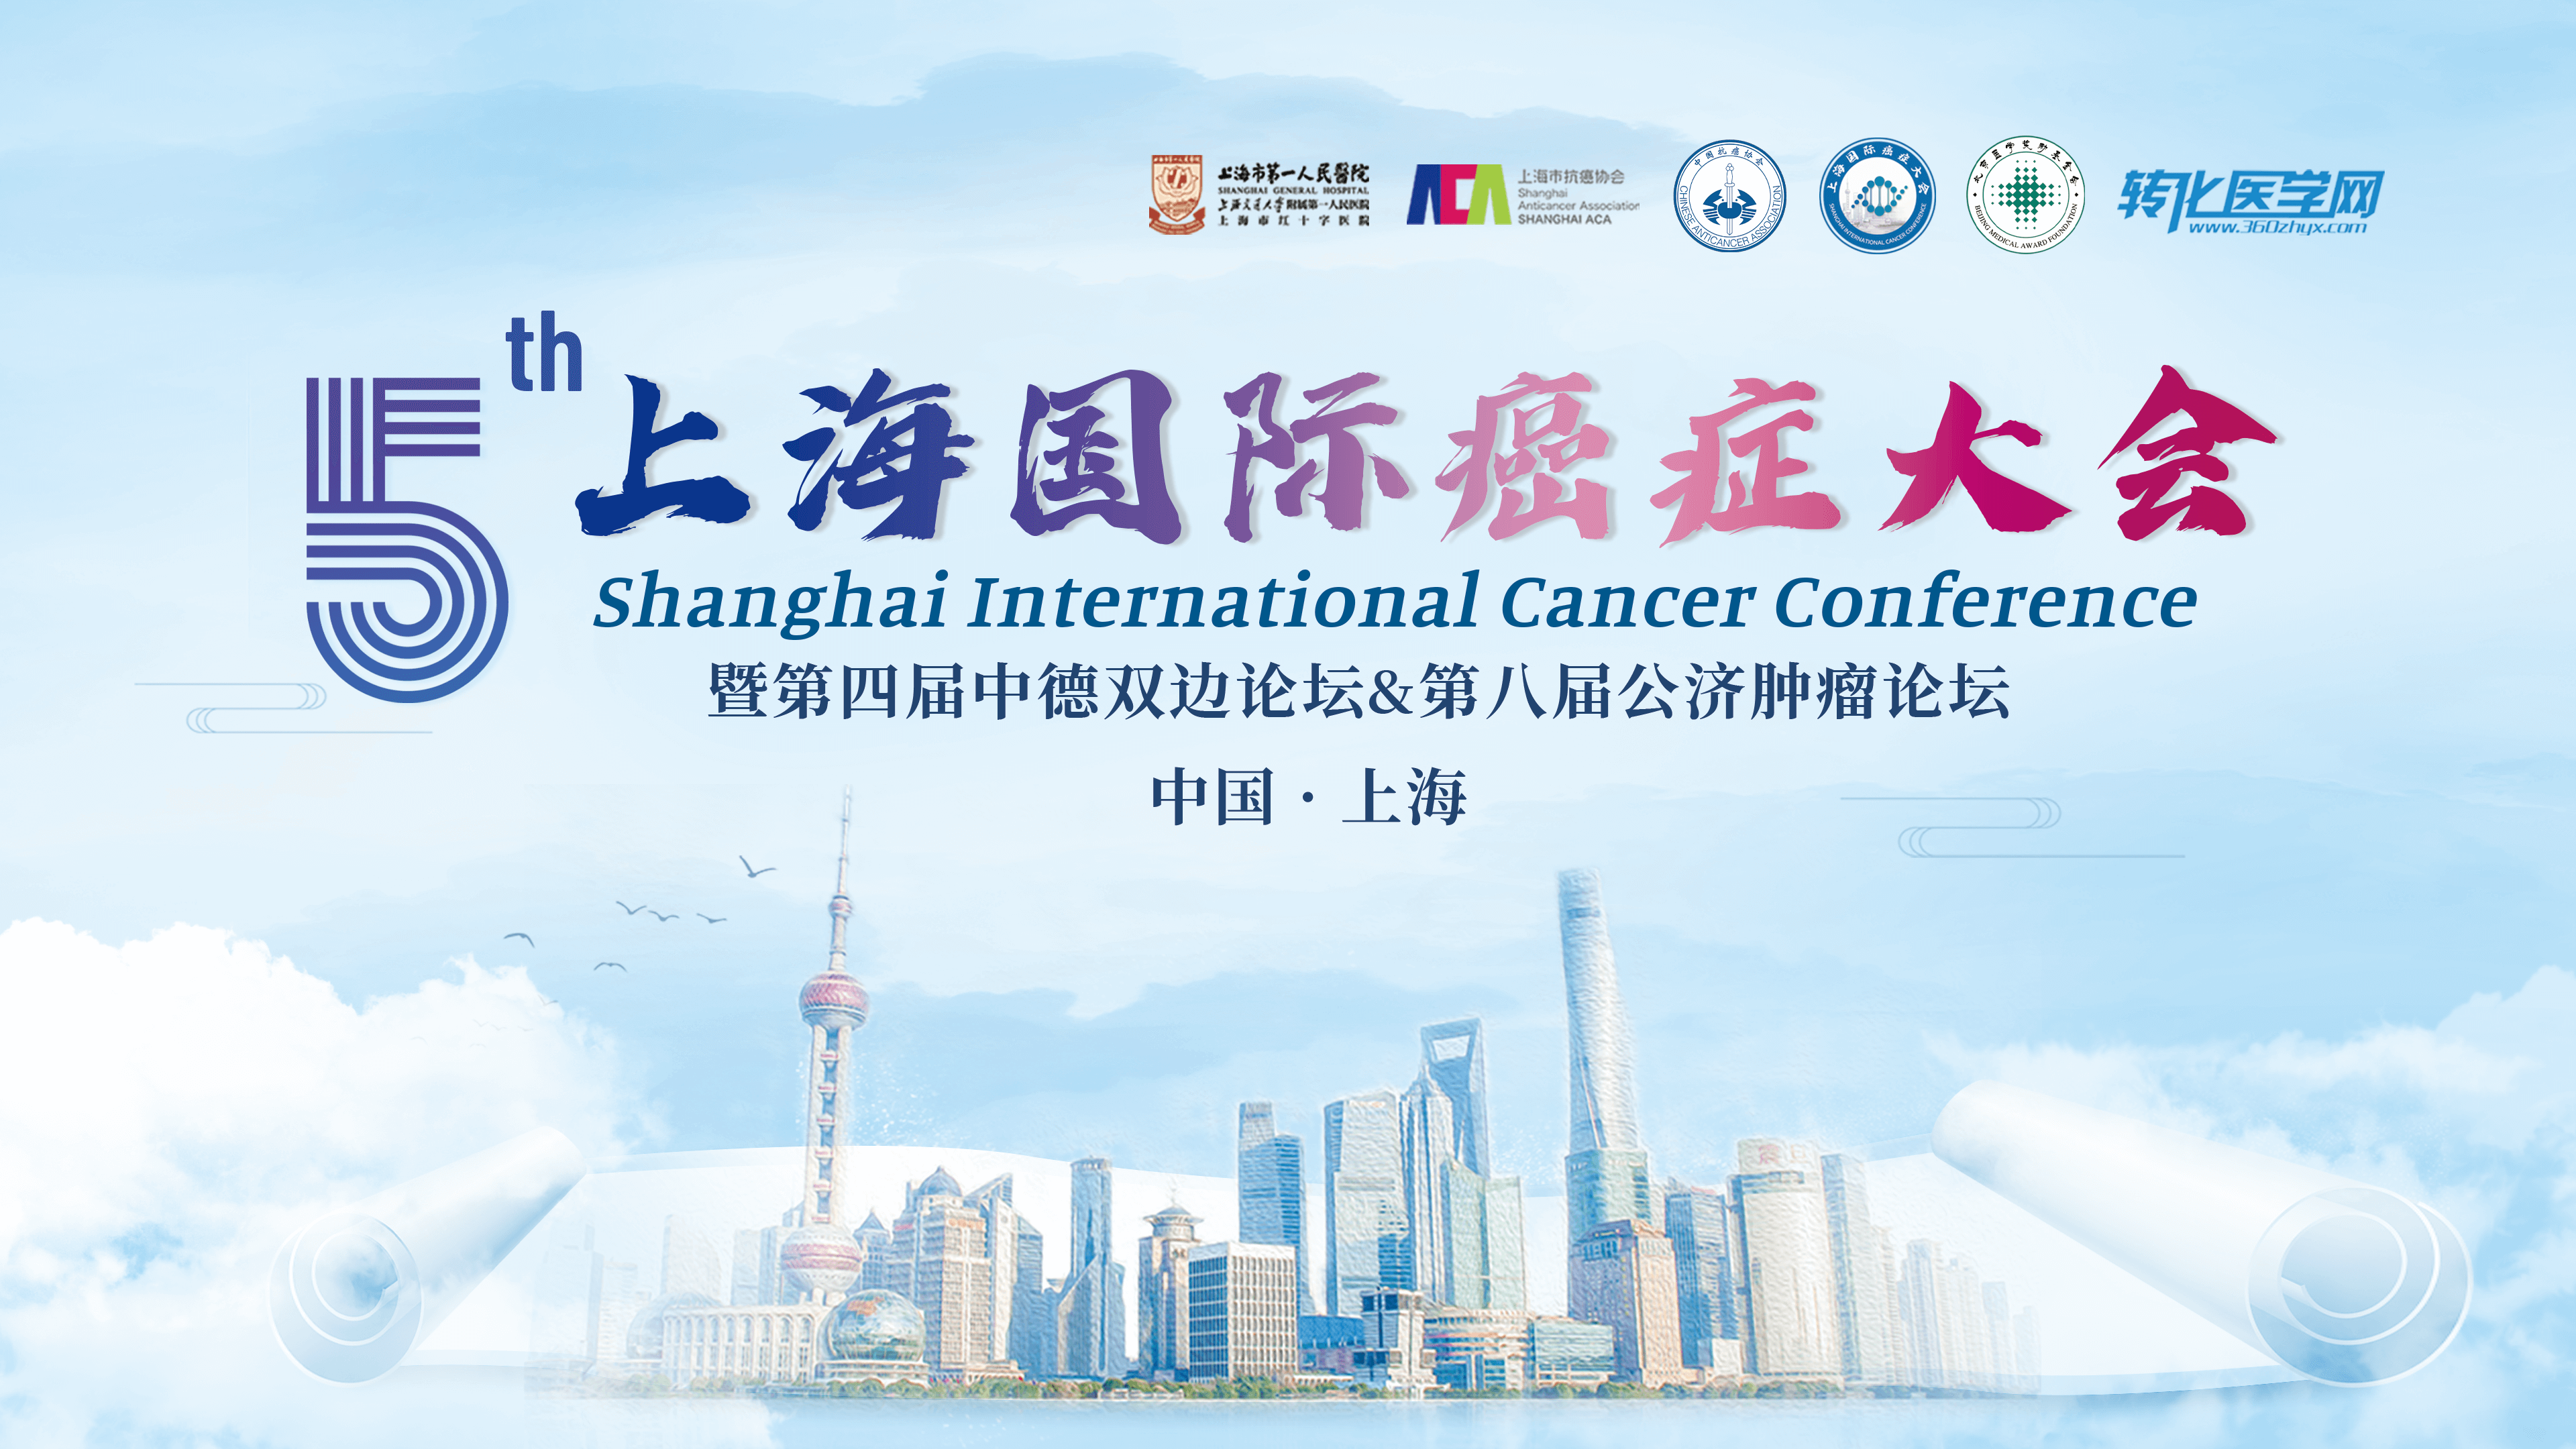 会议通知 | 集萃药康 邀您共赴第五届上海国际癌症大会